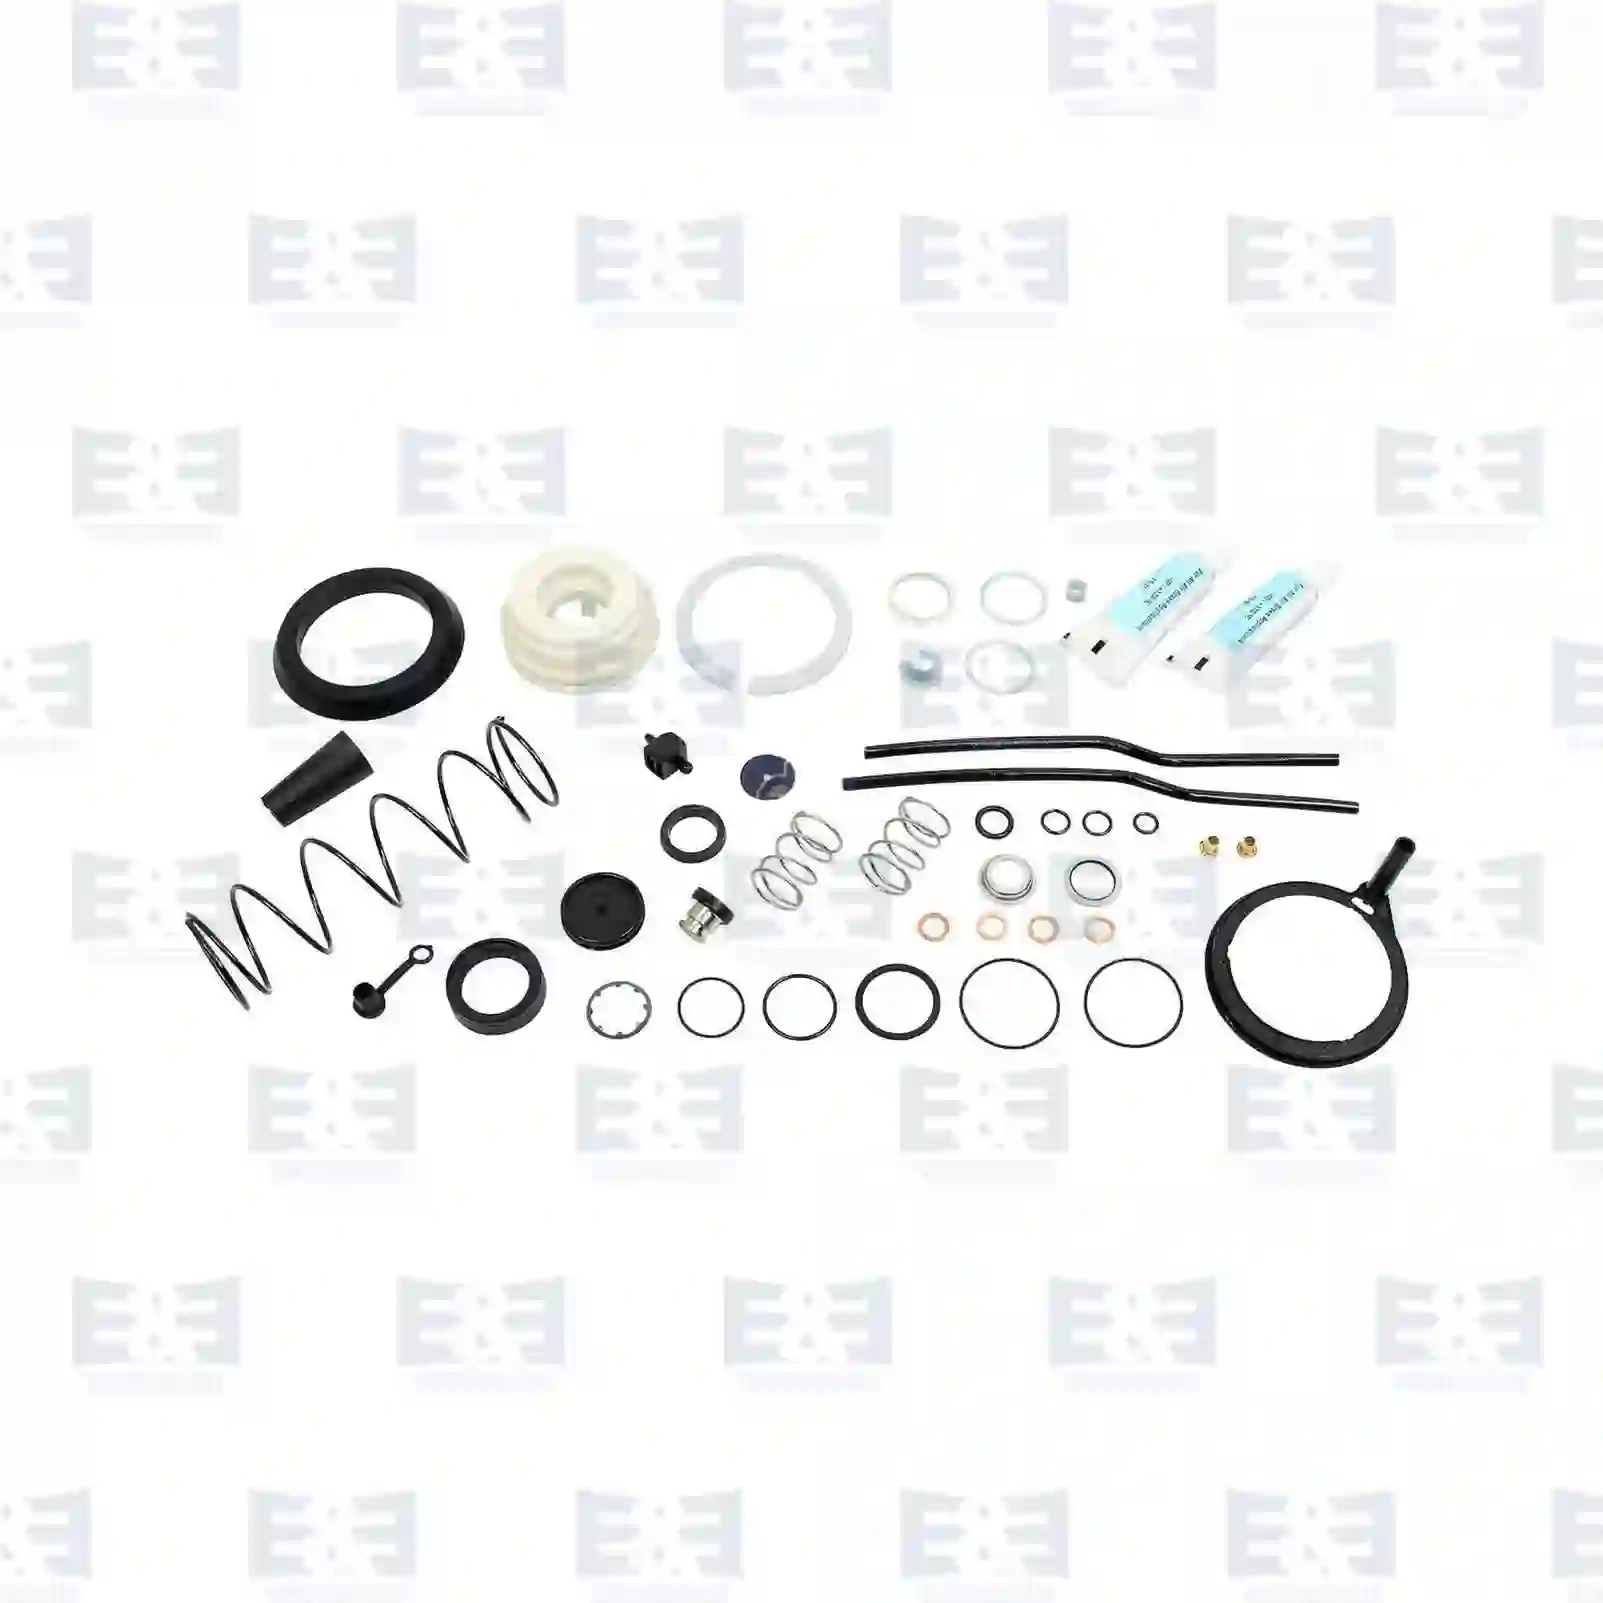 Repair kit, clutch servo, 2E2288314, 0698529, 698529, FBU1542, 08190167, 42492968, 8190167, 09700519042, 85300019898, 99114230701, 0002900247 ||  2E2288314 E&E Truck Spare Parts | Truck Spare Parts, Auotomotive Spare Parts Repair kit, clutch servo, 2E2288314, 0698529, 698529, FBU1542, 08190167, 42492968, 8190167, 09700519042, 85300019898, 99114230701, 0002900247 ||  2E2288314 E&E Truck Spare Parts | Truck Spare Parts, Auotomotive Spare Parts